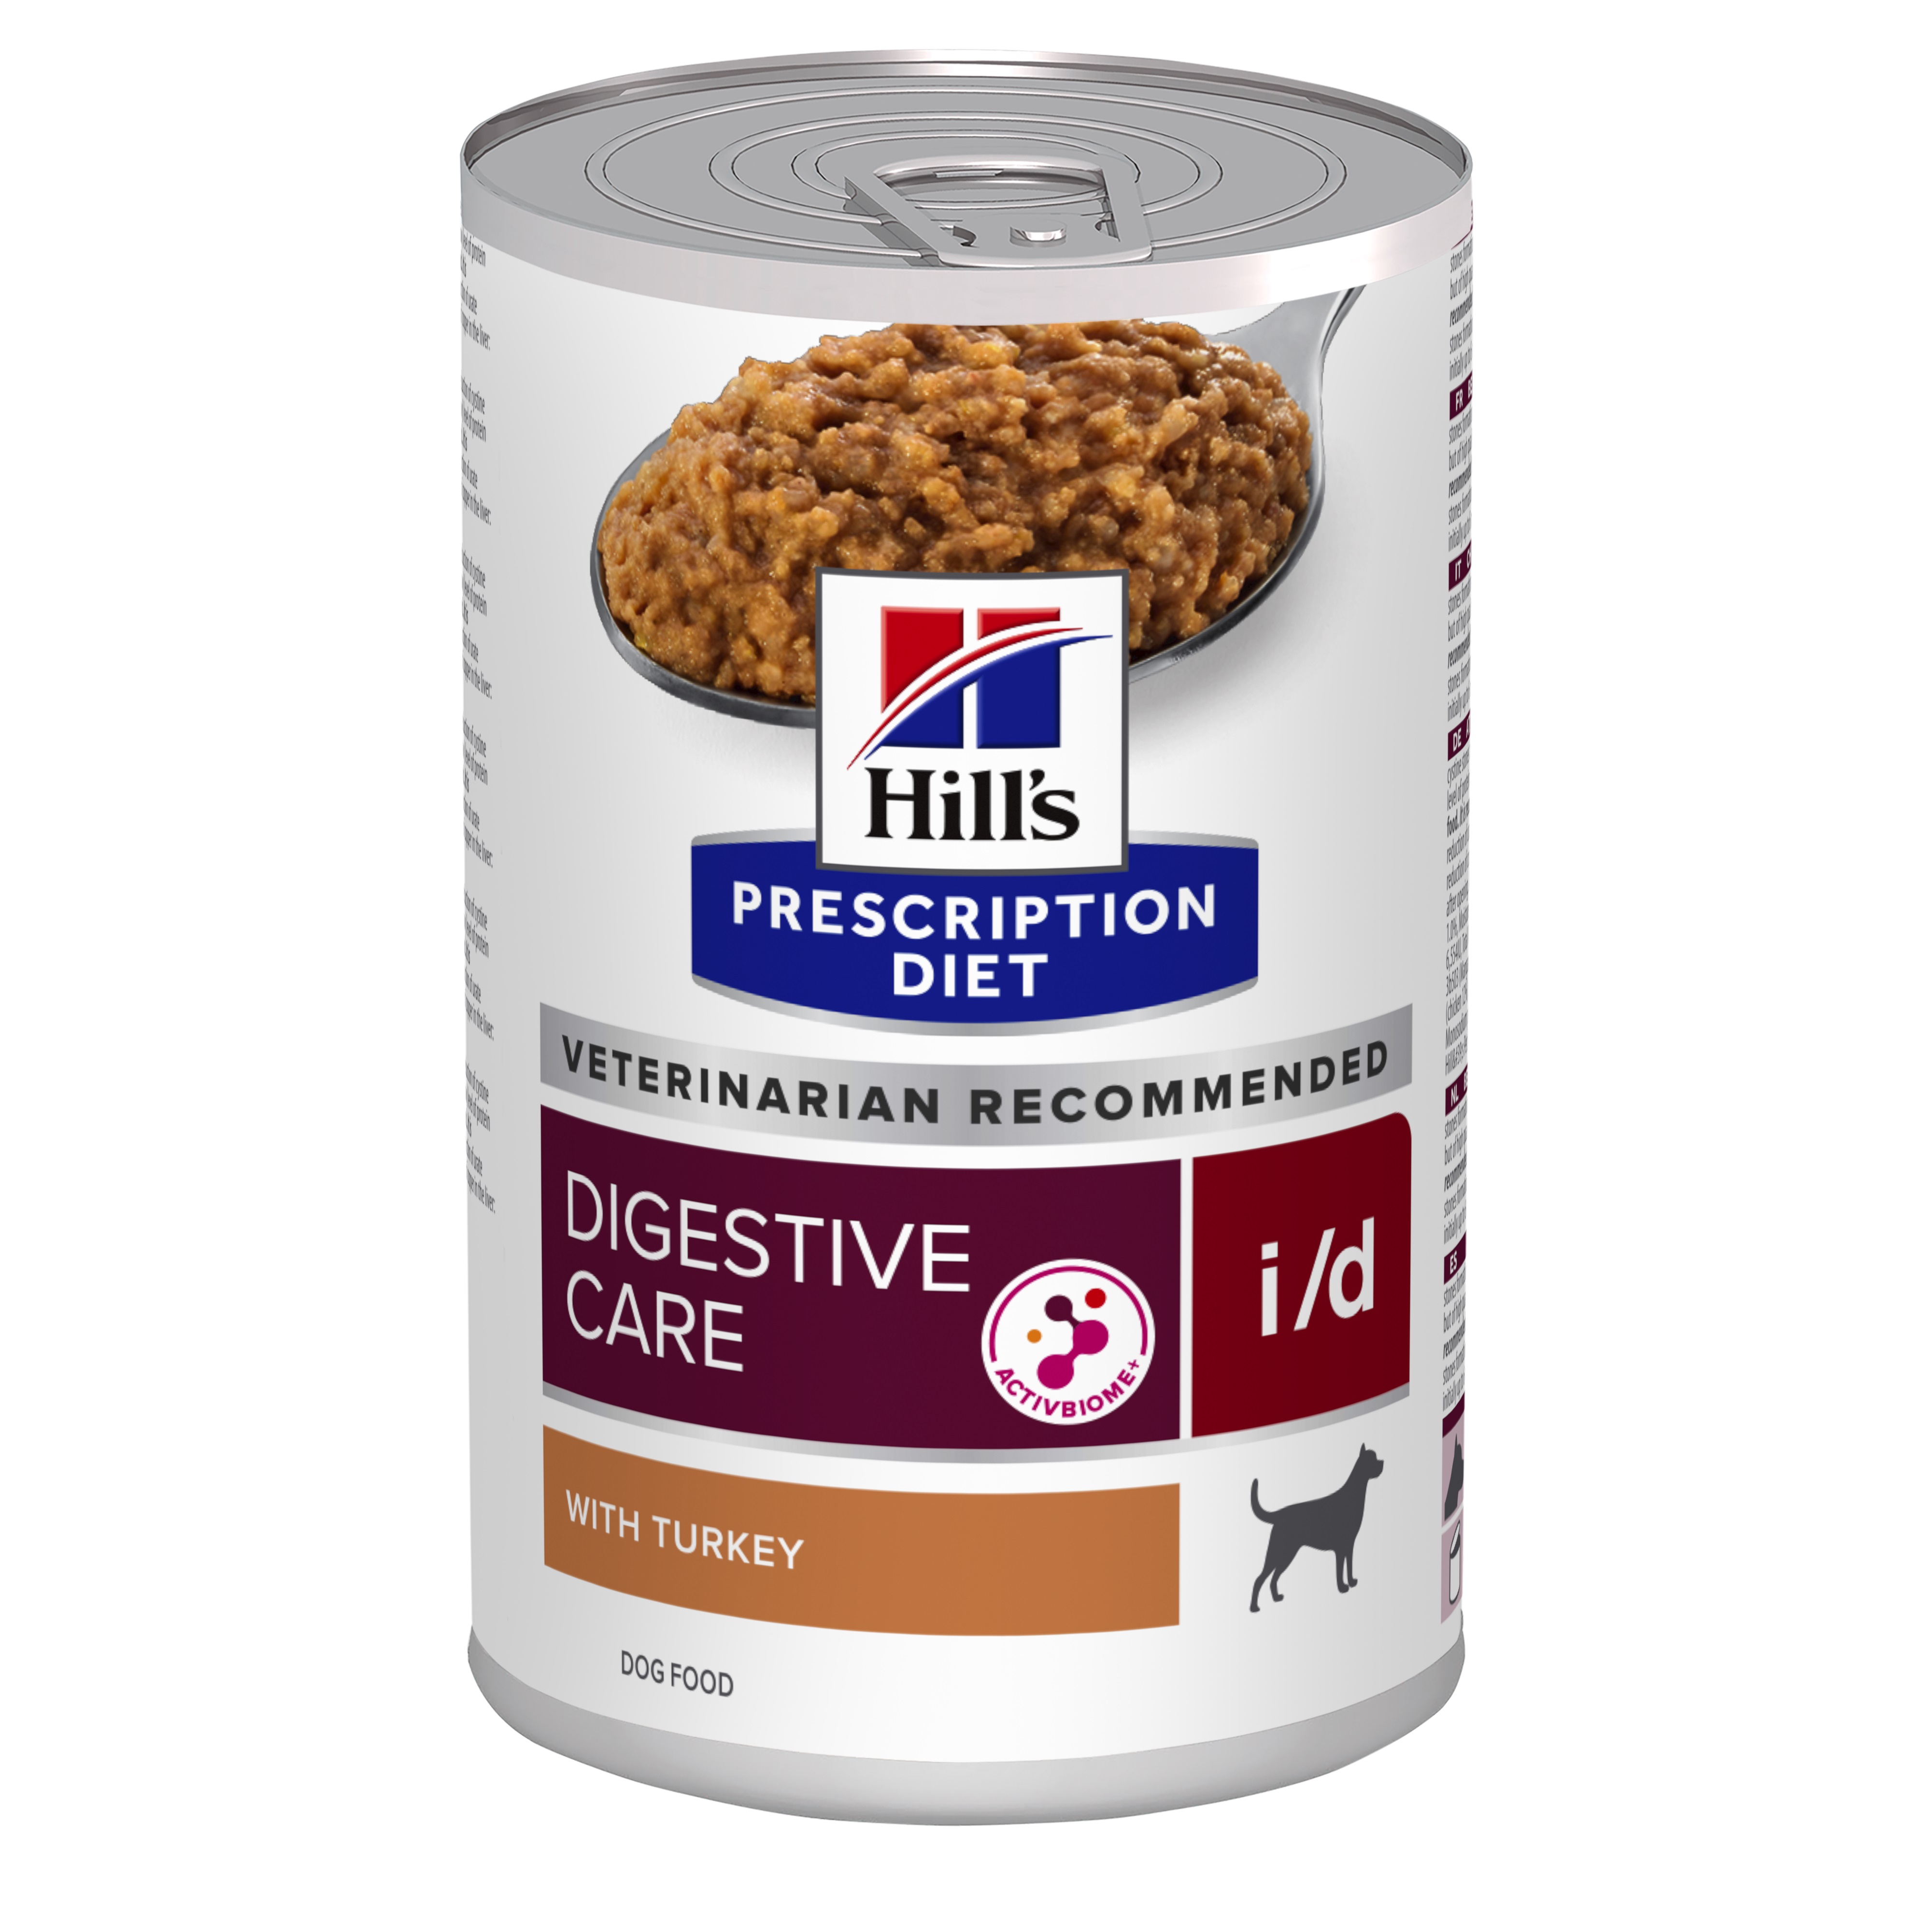 שימורי i/d | Hill's Prescription Diet דייג'סטיב קייר לכלב, 360 גר'